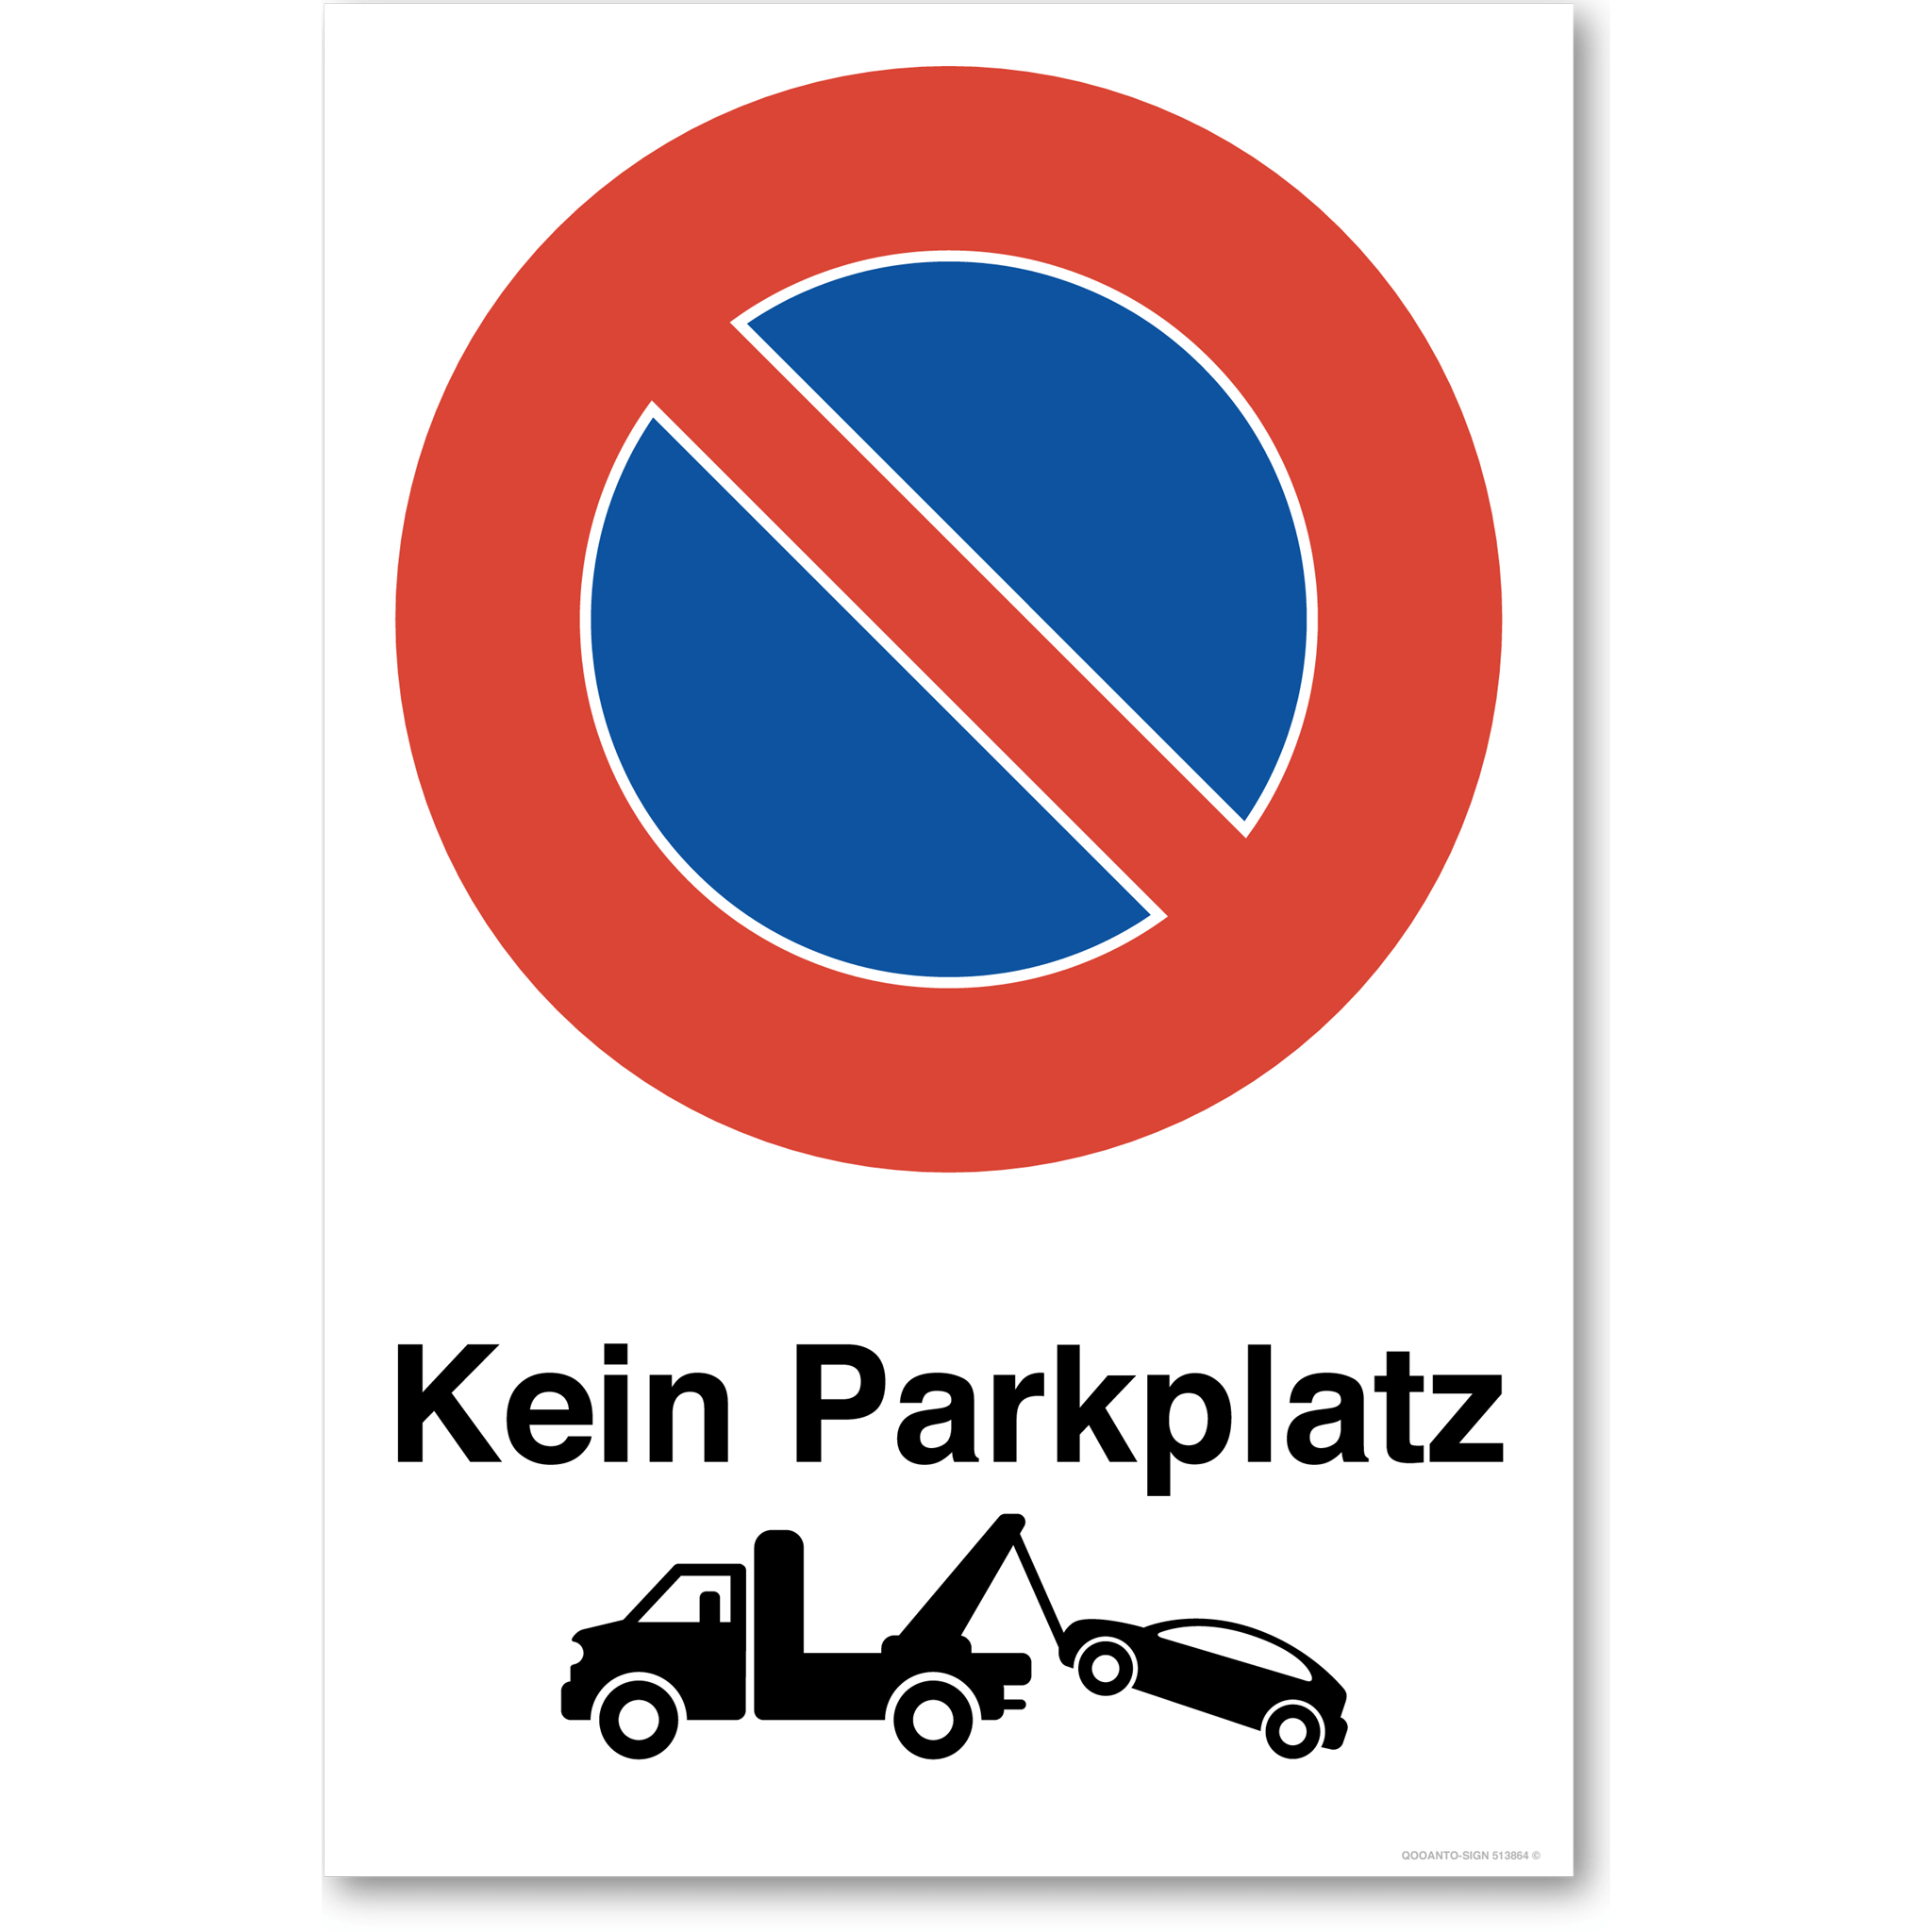 Kein Parkplatz mit Abschleppwagen - Parkieren verboten - Parkverbotsschild hochformat